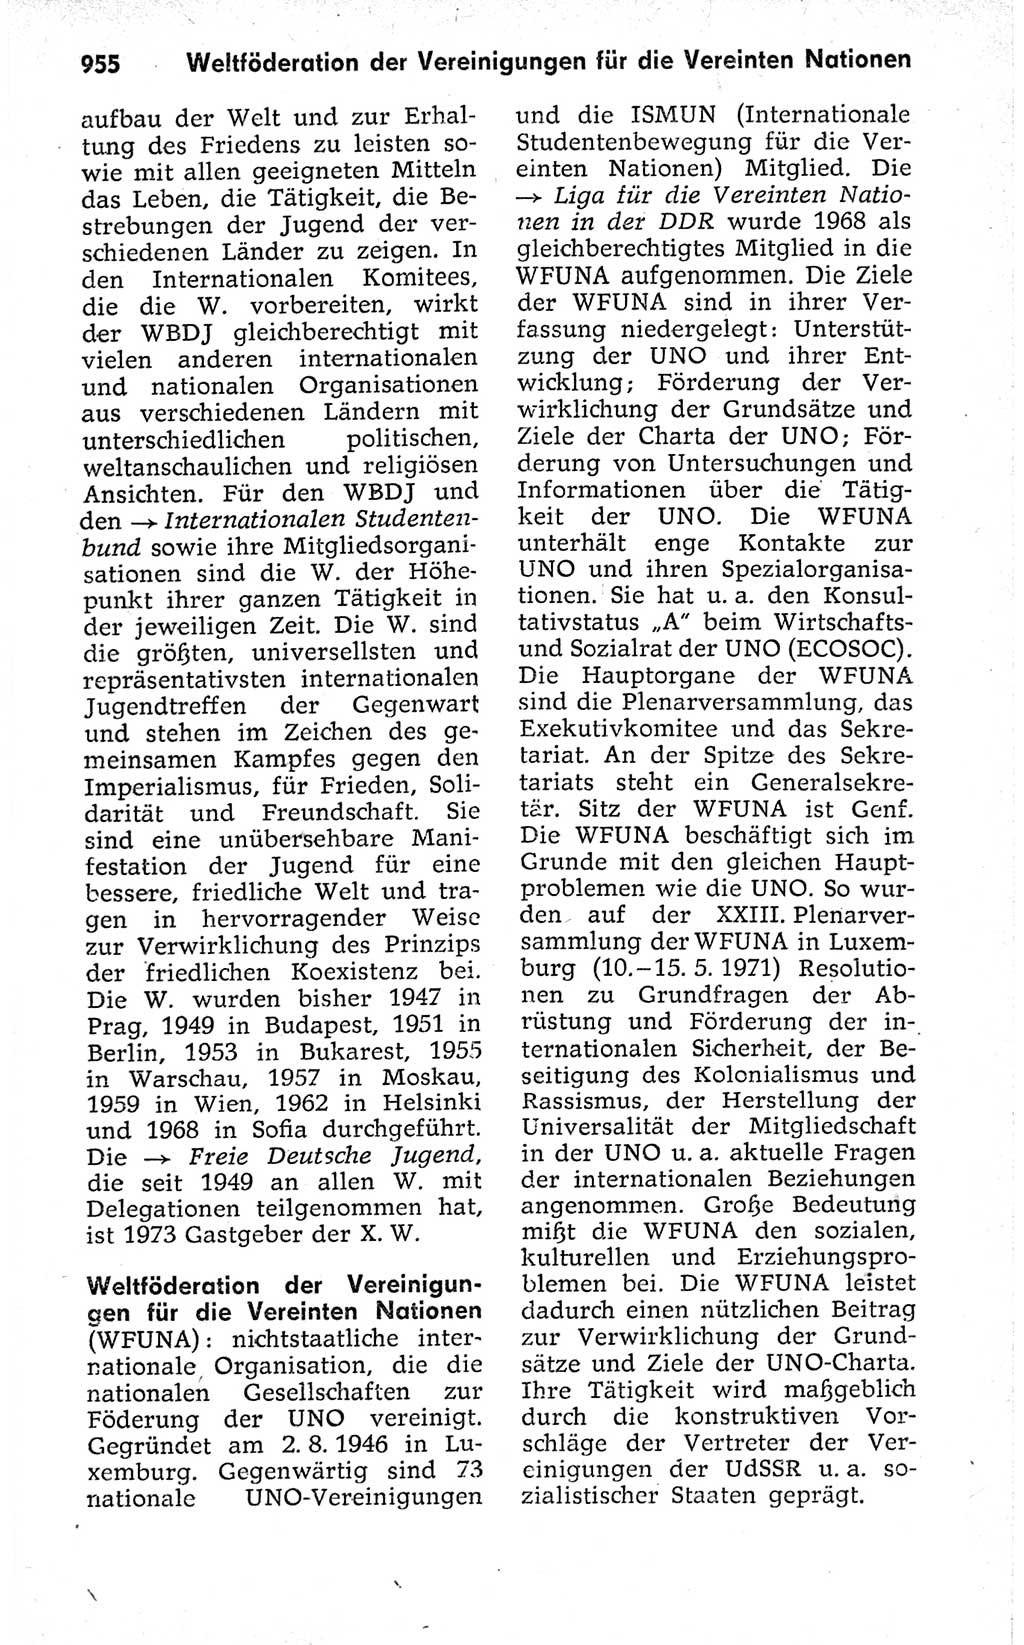 Kleines politisches Wörterbuch [Deutsche Demokratische Republik (DDR)] 1973, Seite 955 (Kl. pol. Wb. DDR 1973, S. 955)